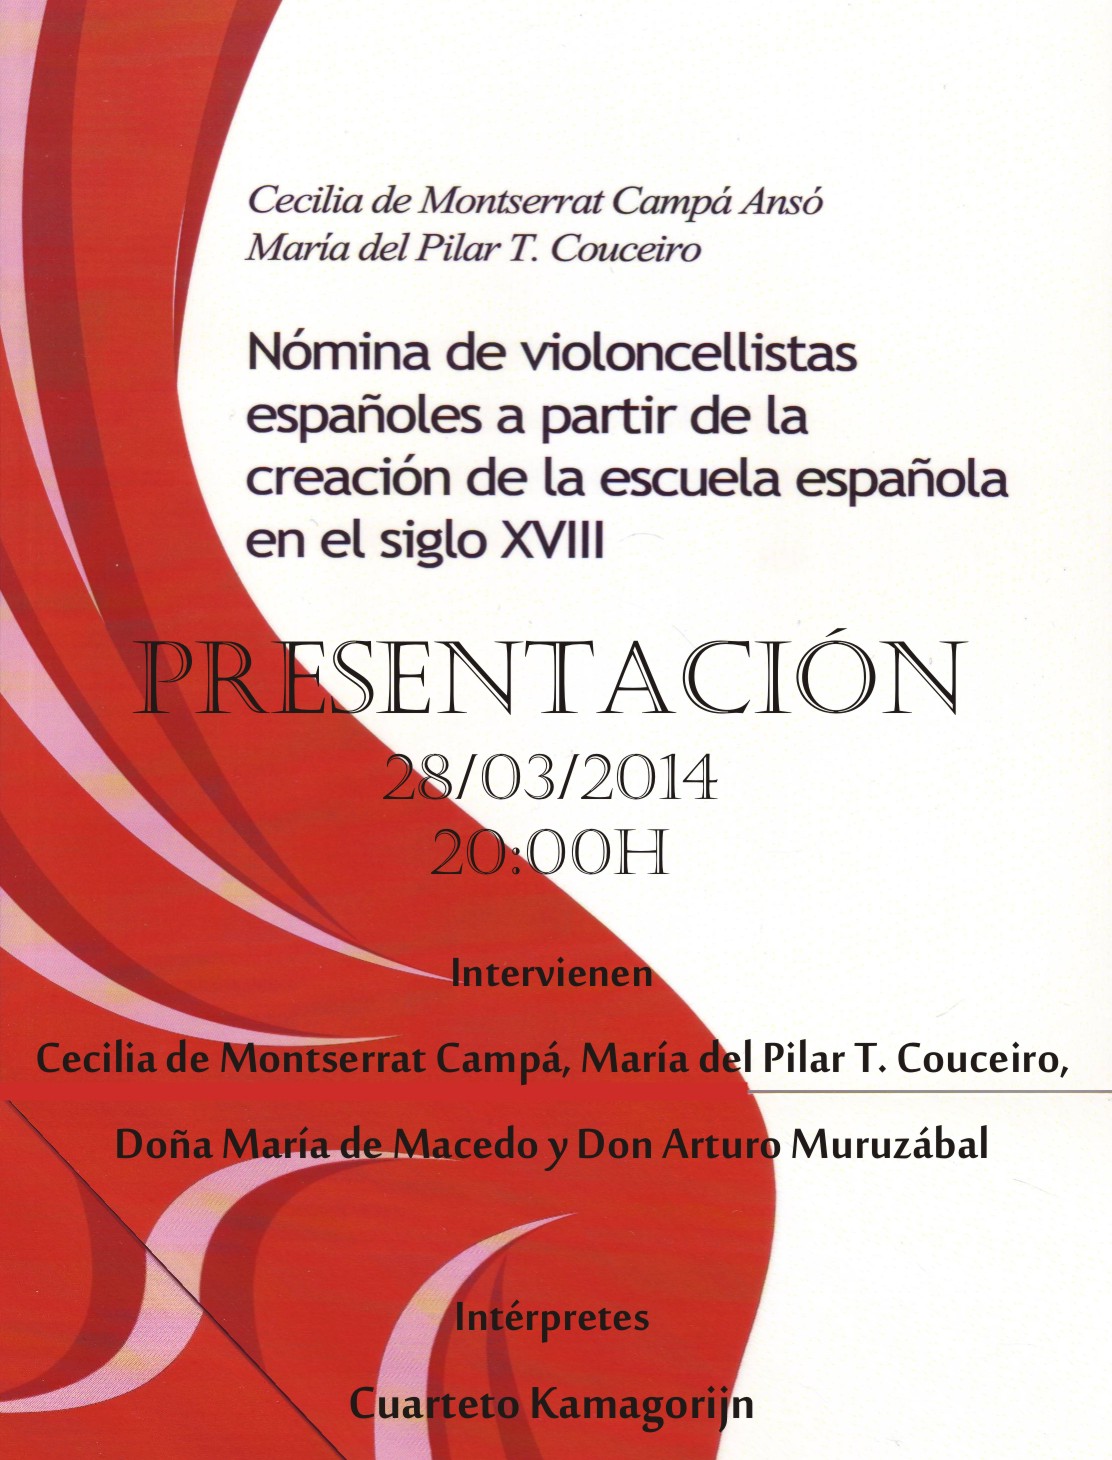 Presentación del libro "Nómina de violoncellistas españoles", de Cecilia de Montserrat Campá y María del Pilar T. Couceiro